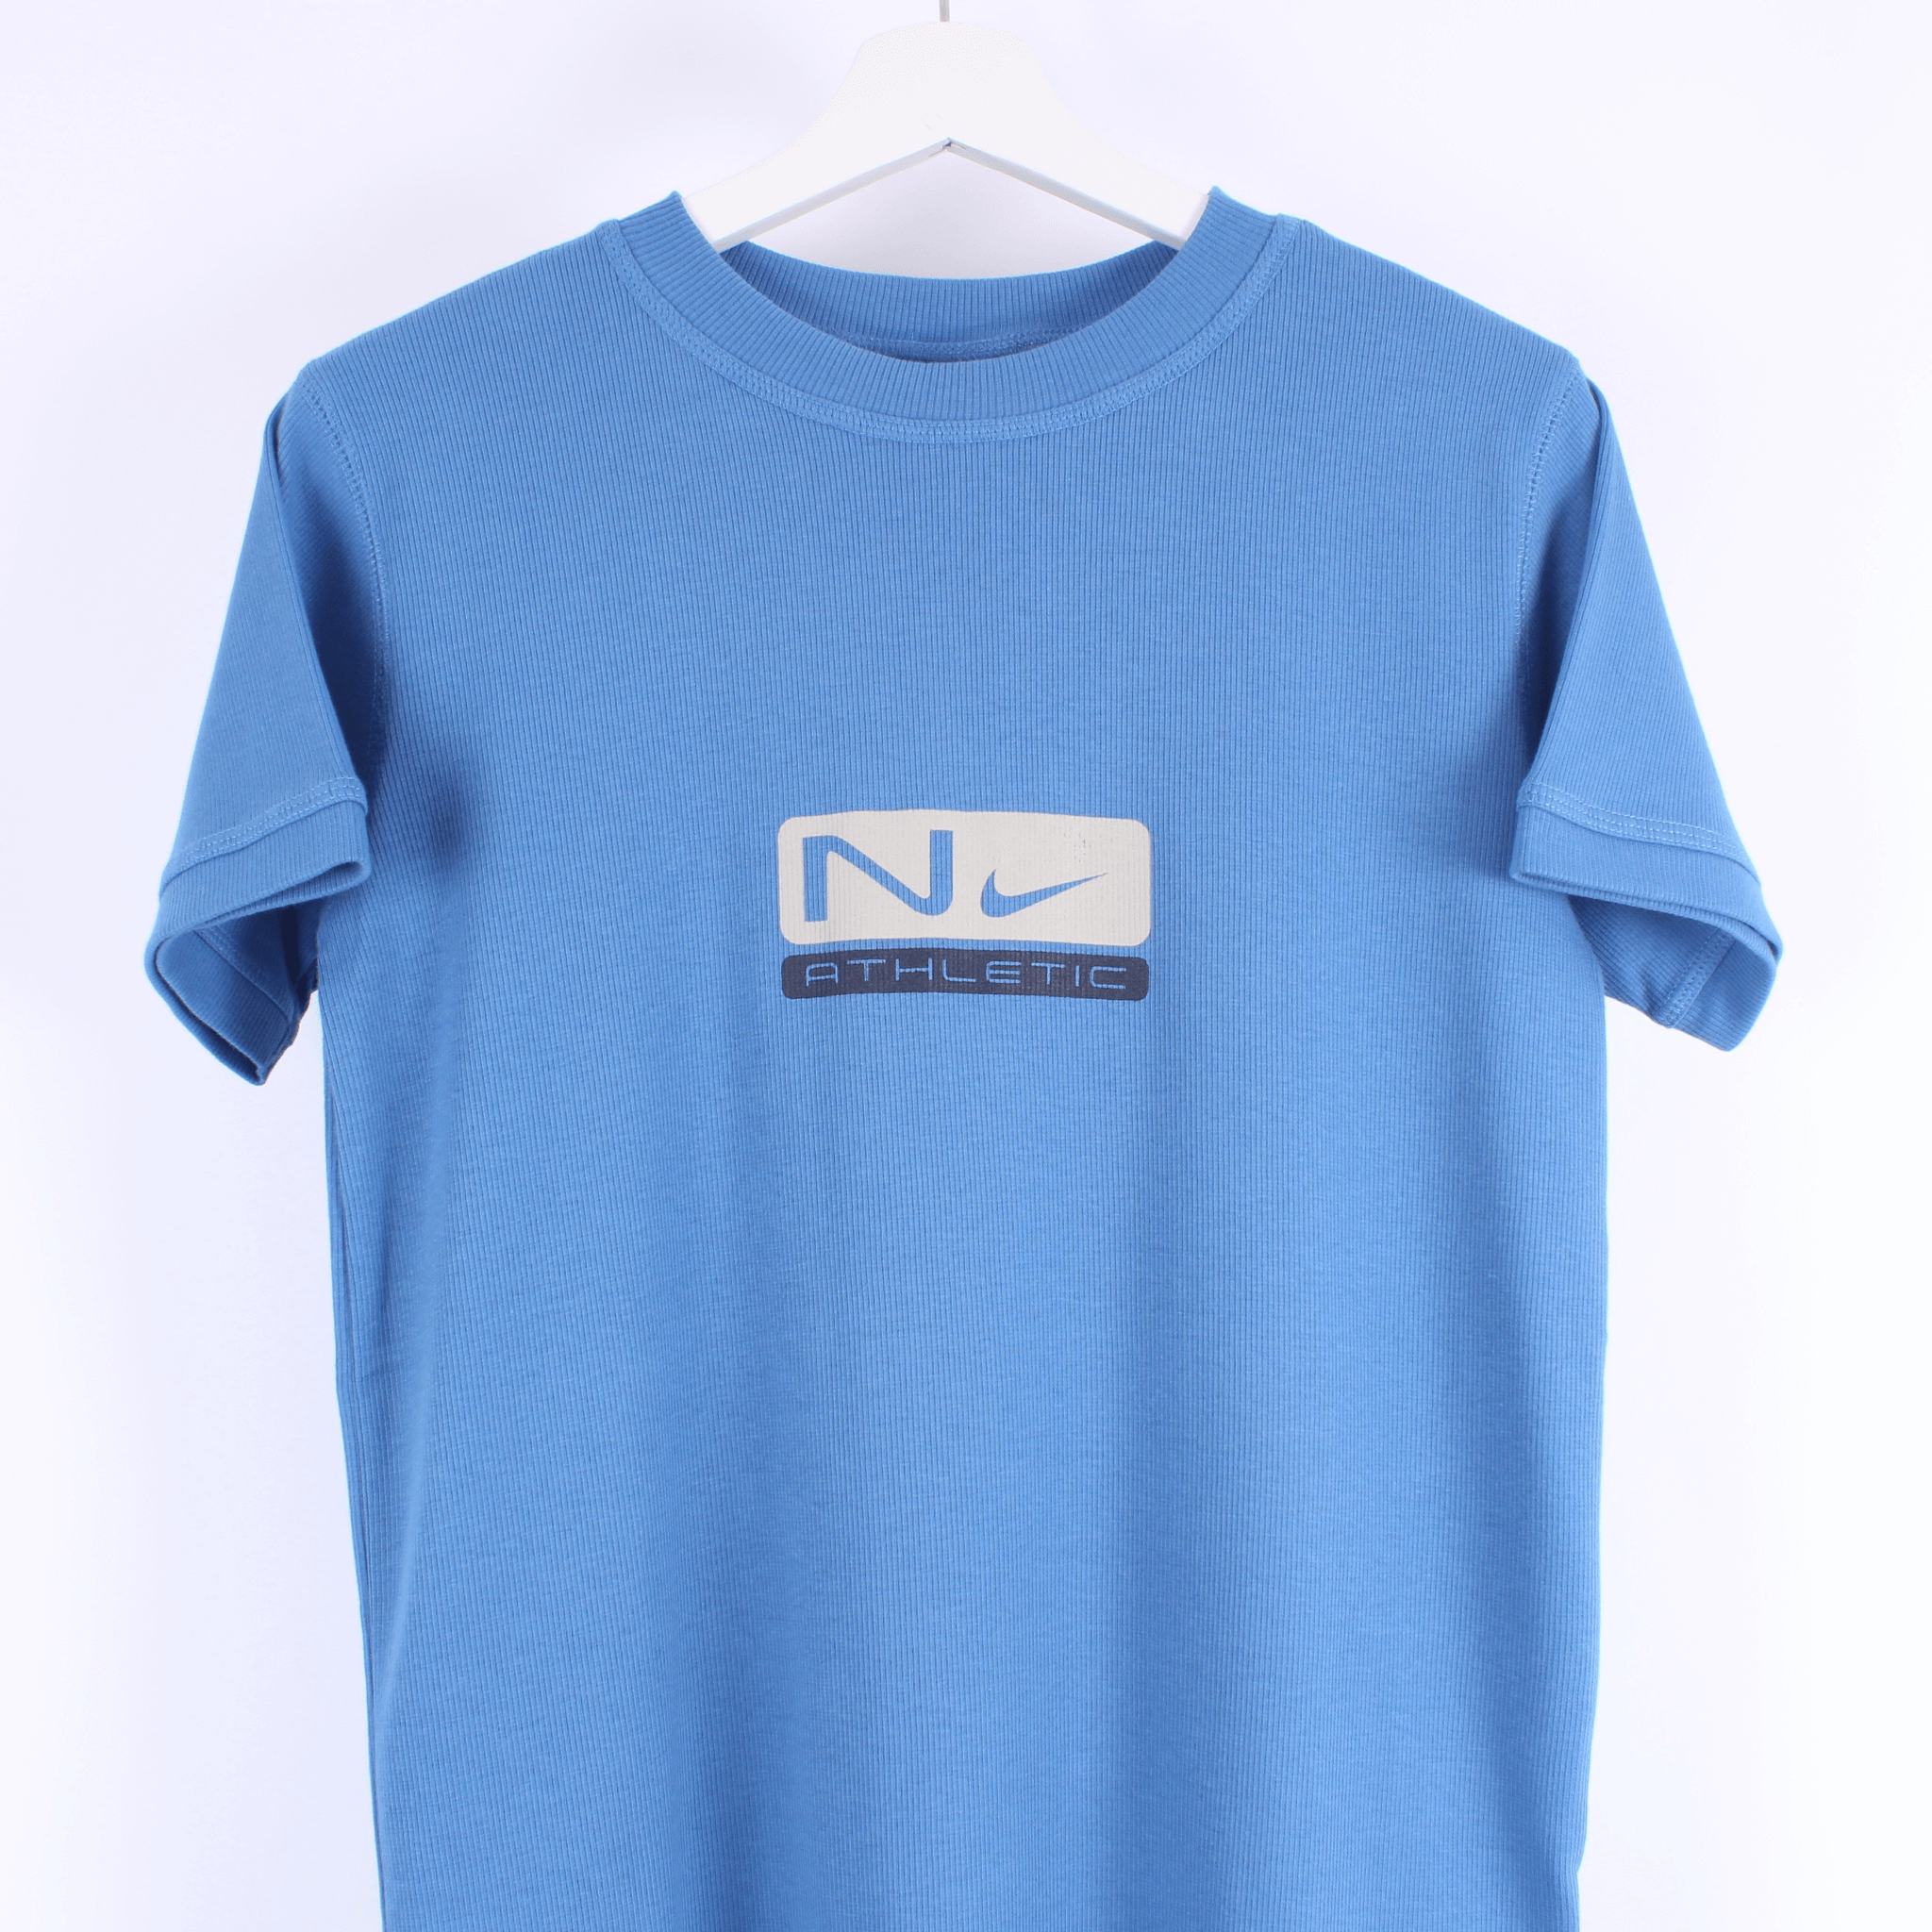 Vintage Nike T Shirt (S) BNWT